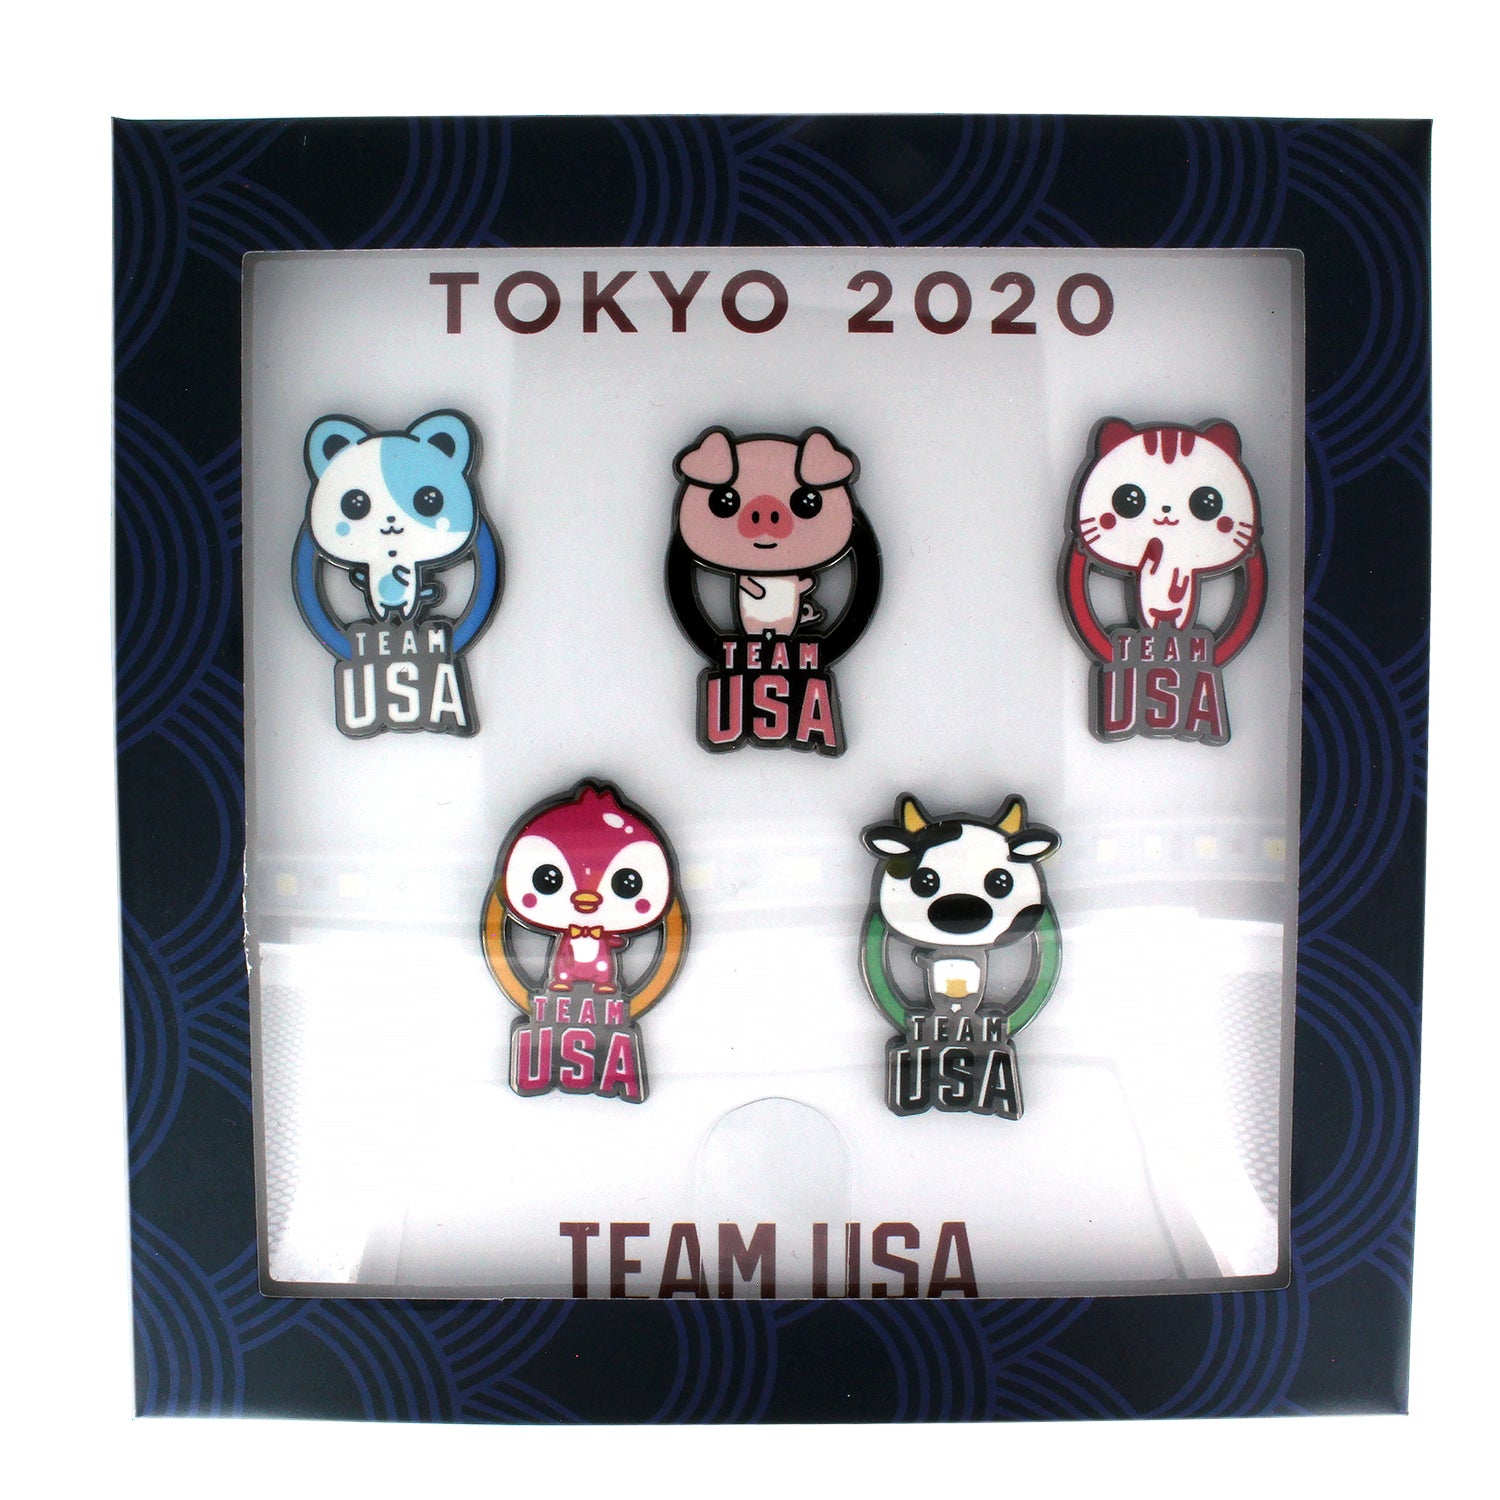 Tokyo Olympics Kawaii Pop Culture Pin Set